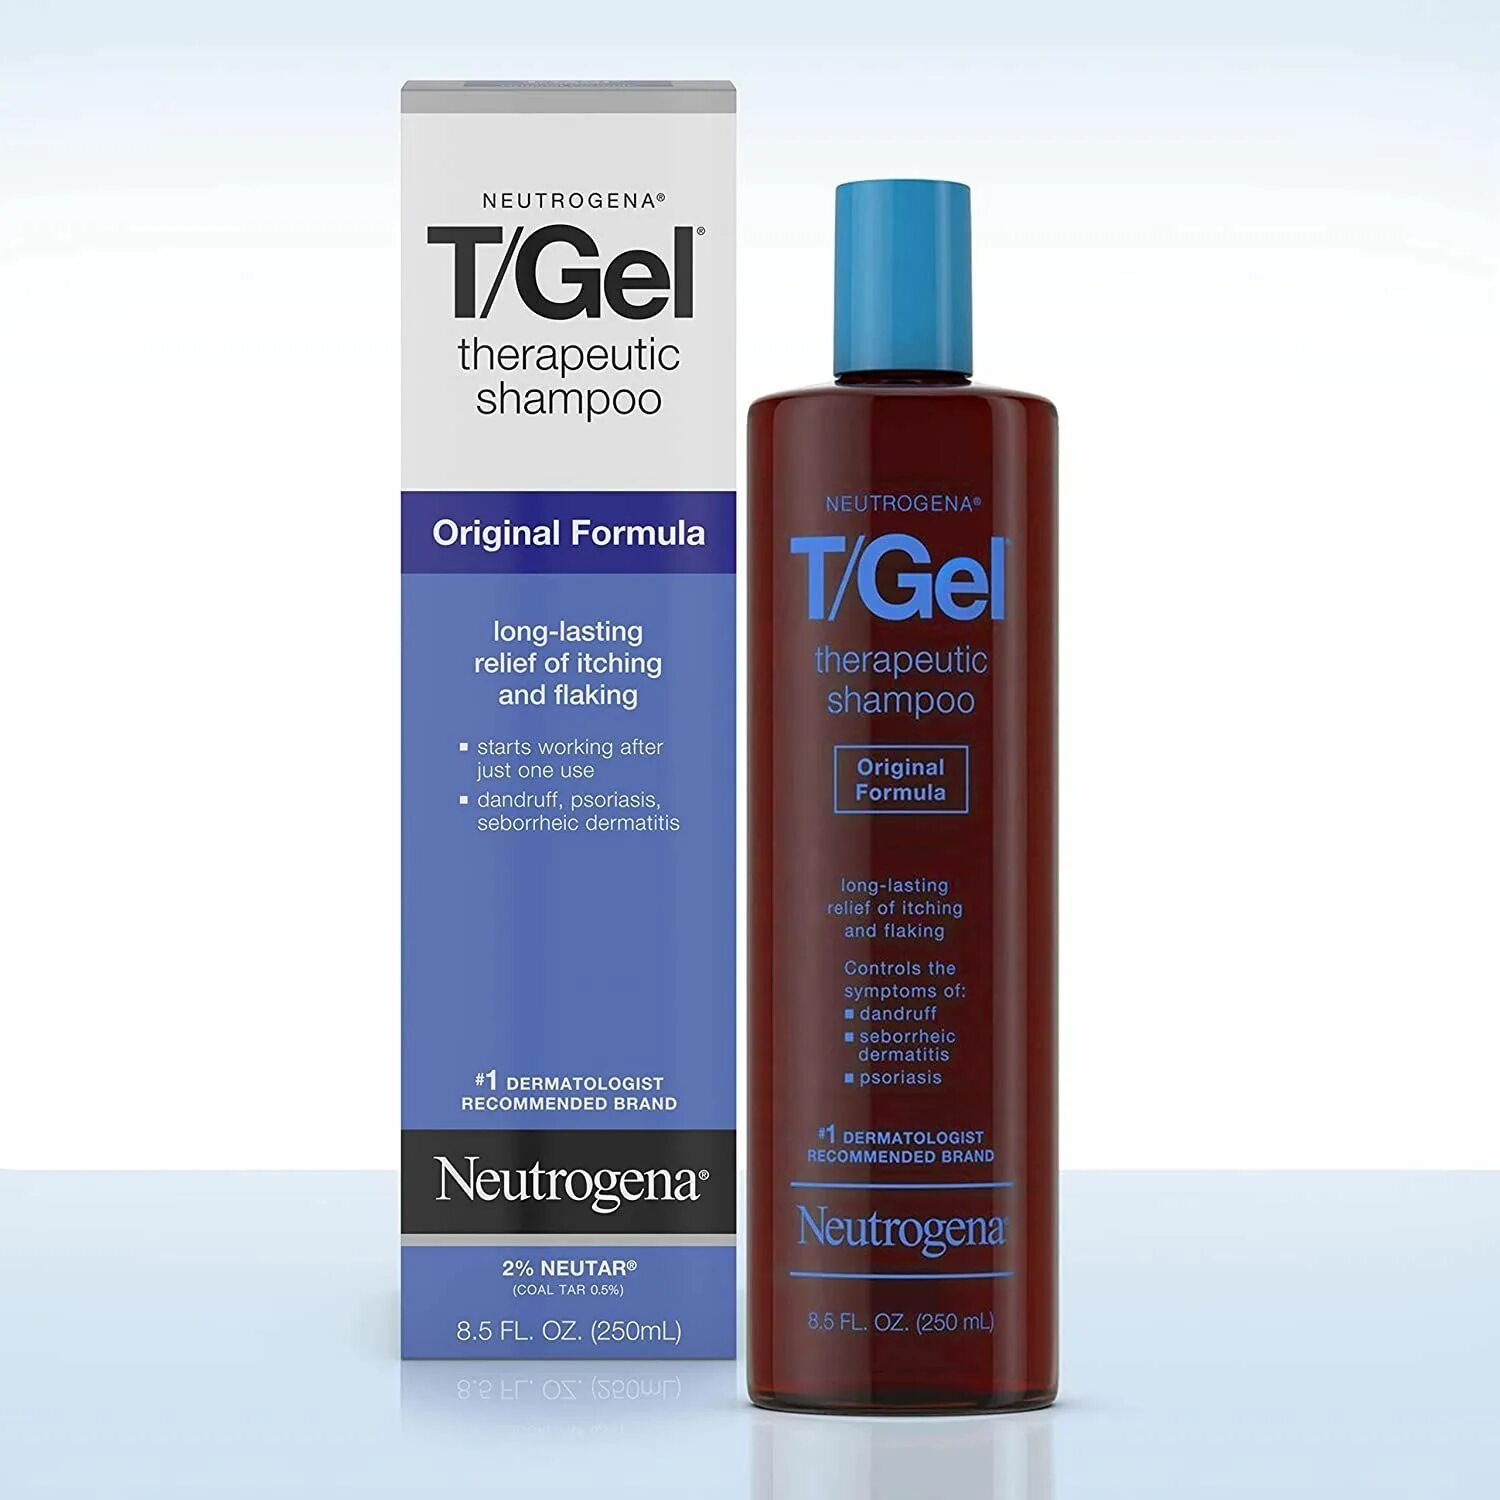 Shampoo gel. Neutrogena t/Gel Therapeutic Shampoo. Neutrogena shampooing t/Gel. T Gel Neutrogena шампунь. Neutrogena t Gel ( Extra strength).